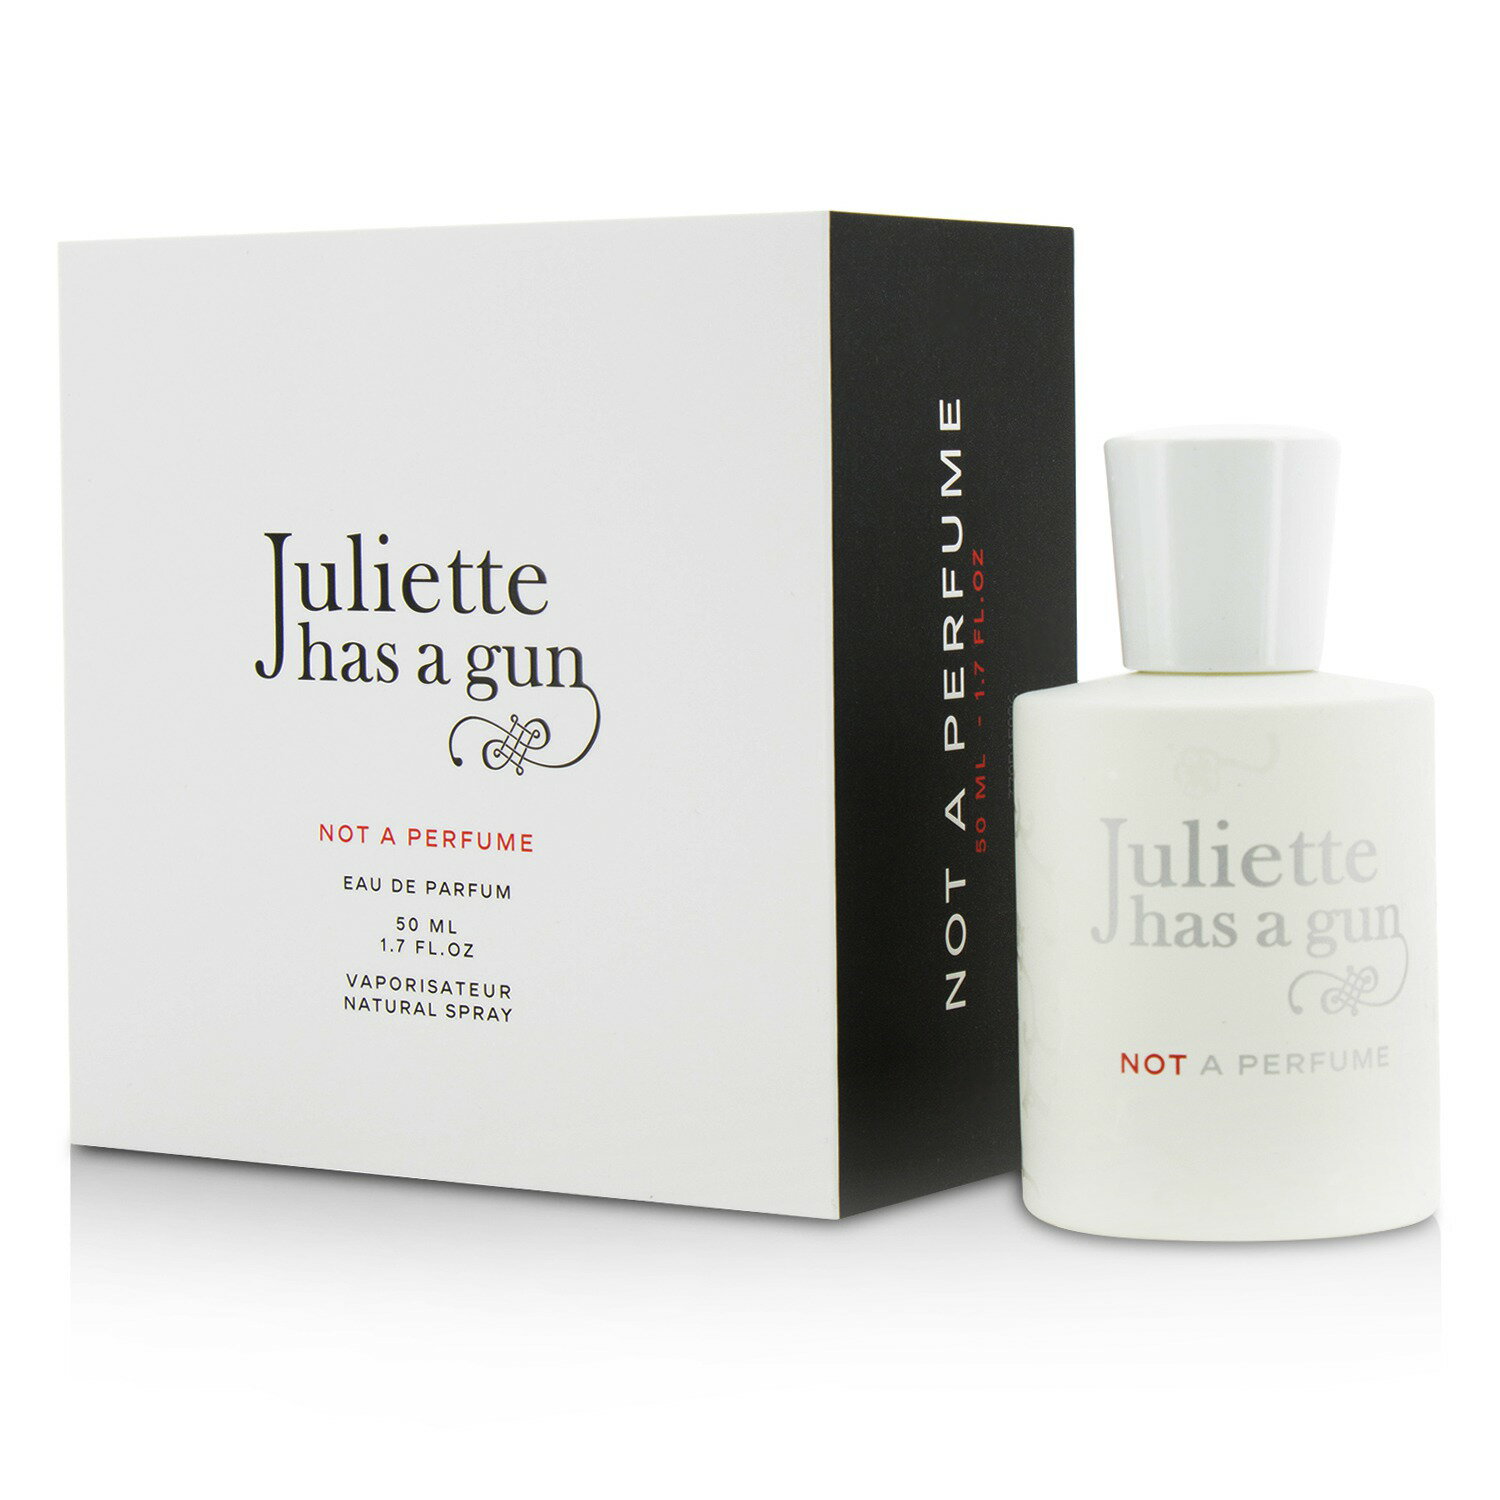 帶槍茱麗葉 Juliette Has A Gun - Not A Perfume香水噴霧